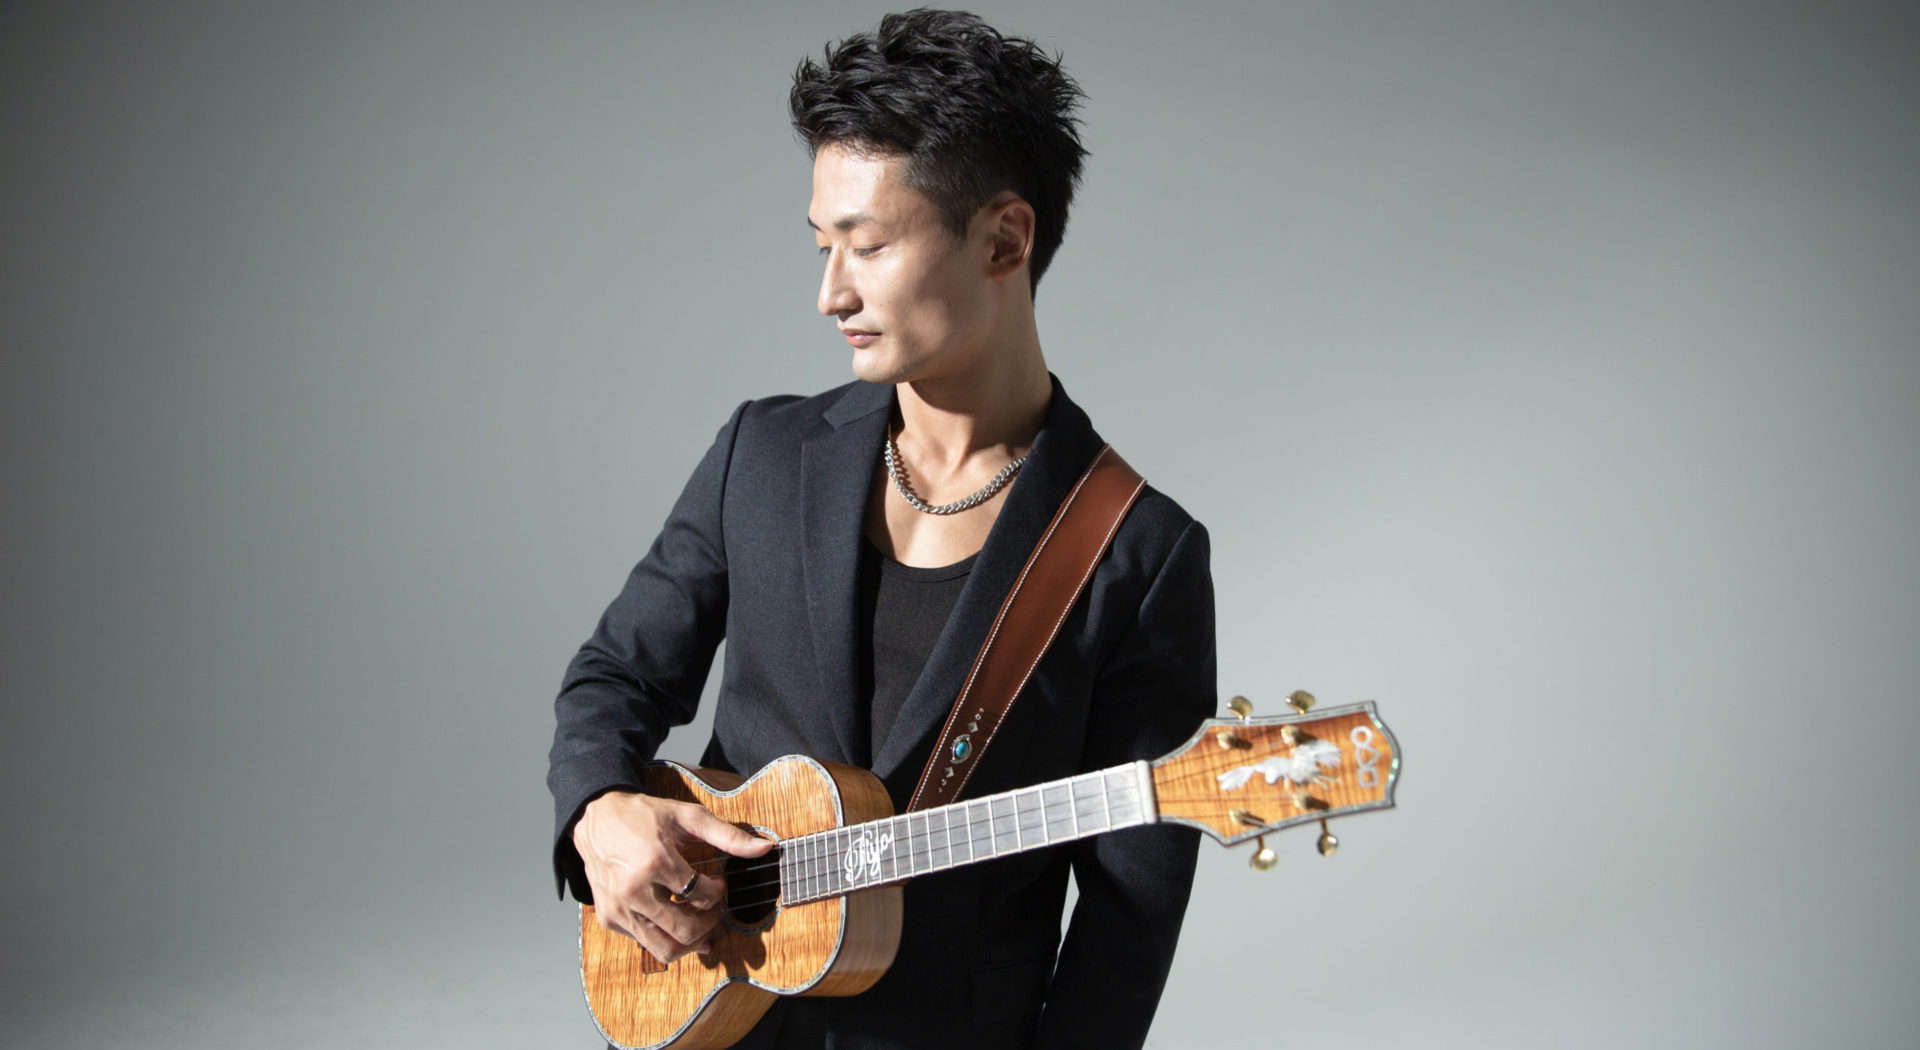 『Ryo Natoyama Unplugged Concert』@Earlybirds Across